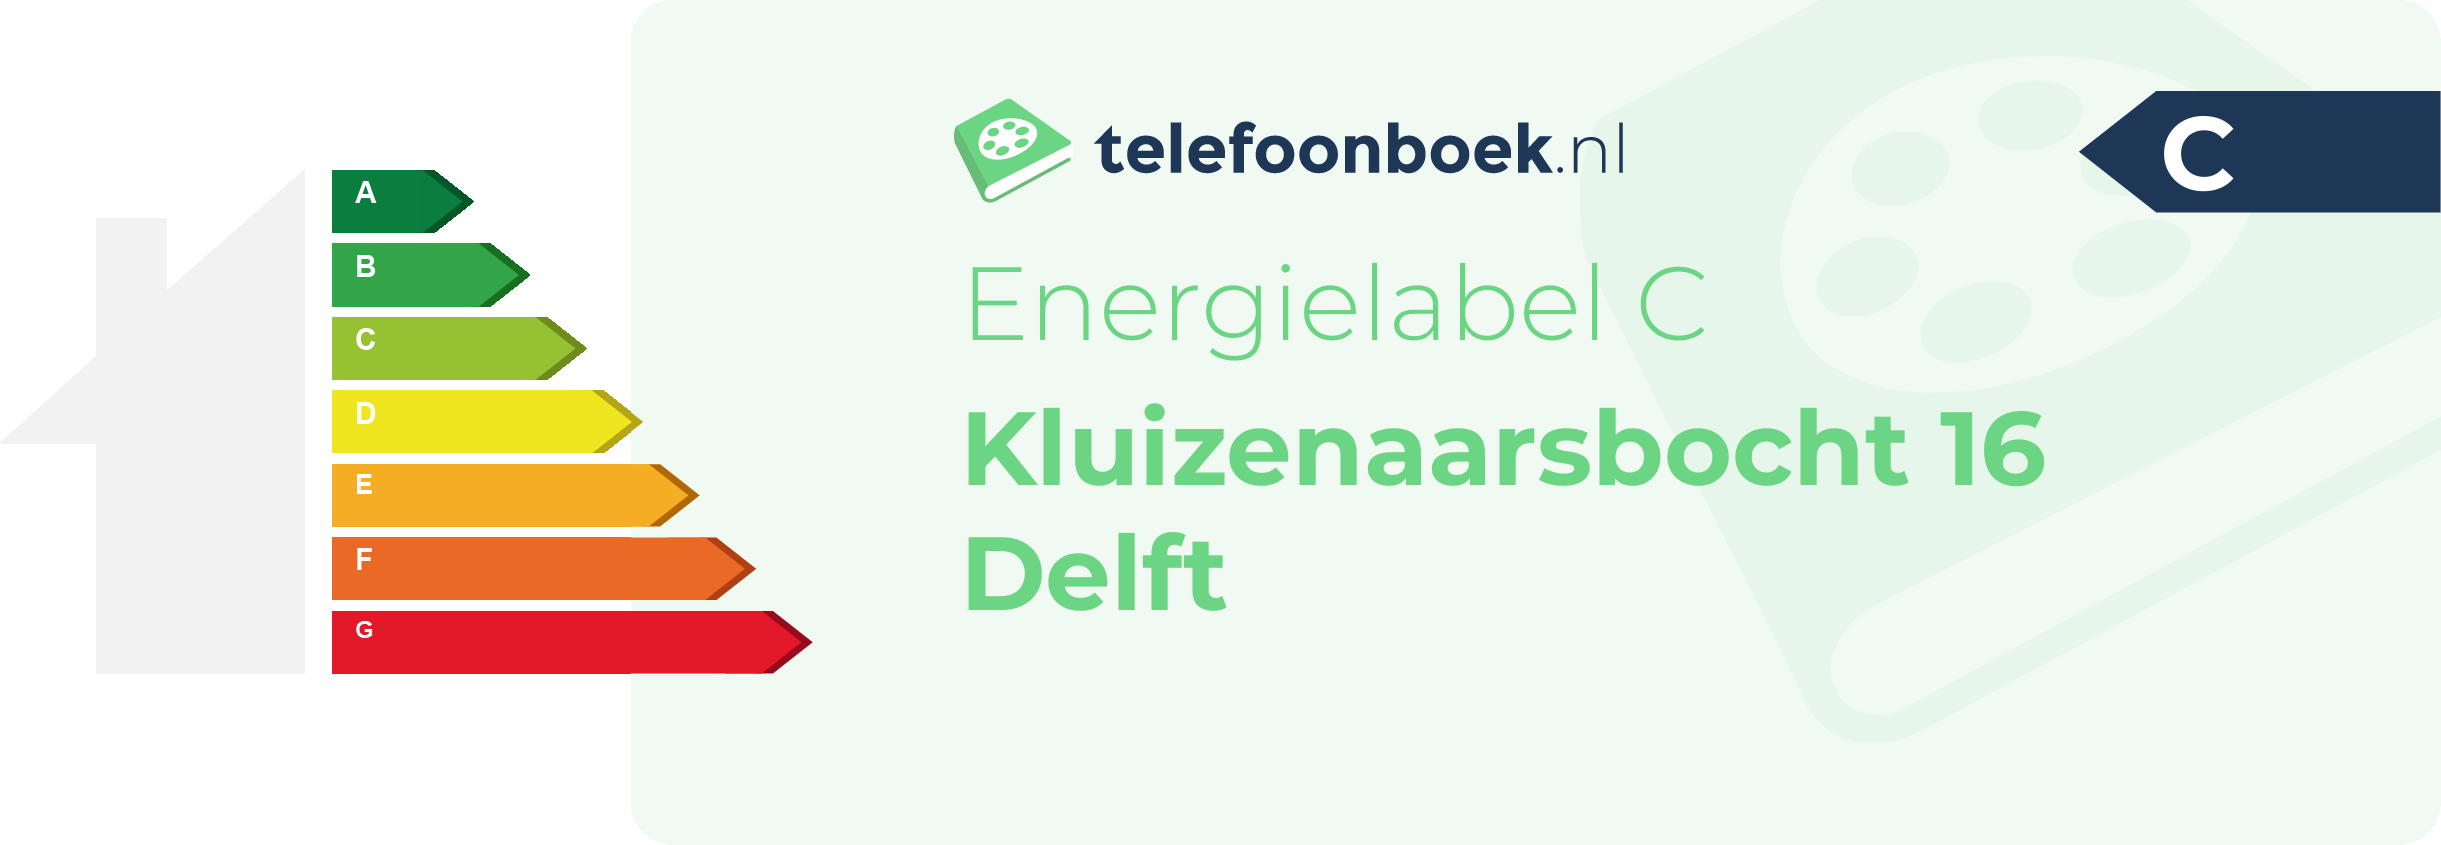 Energielabel Kluizenaarsbocht 16 Delft